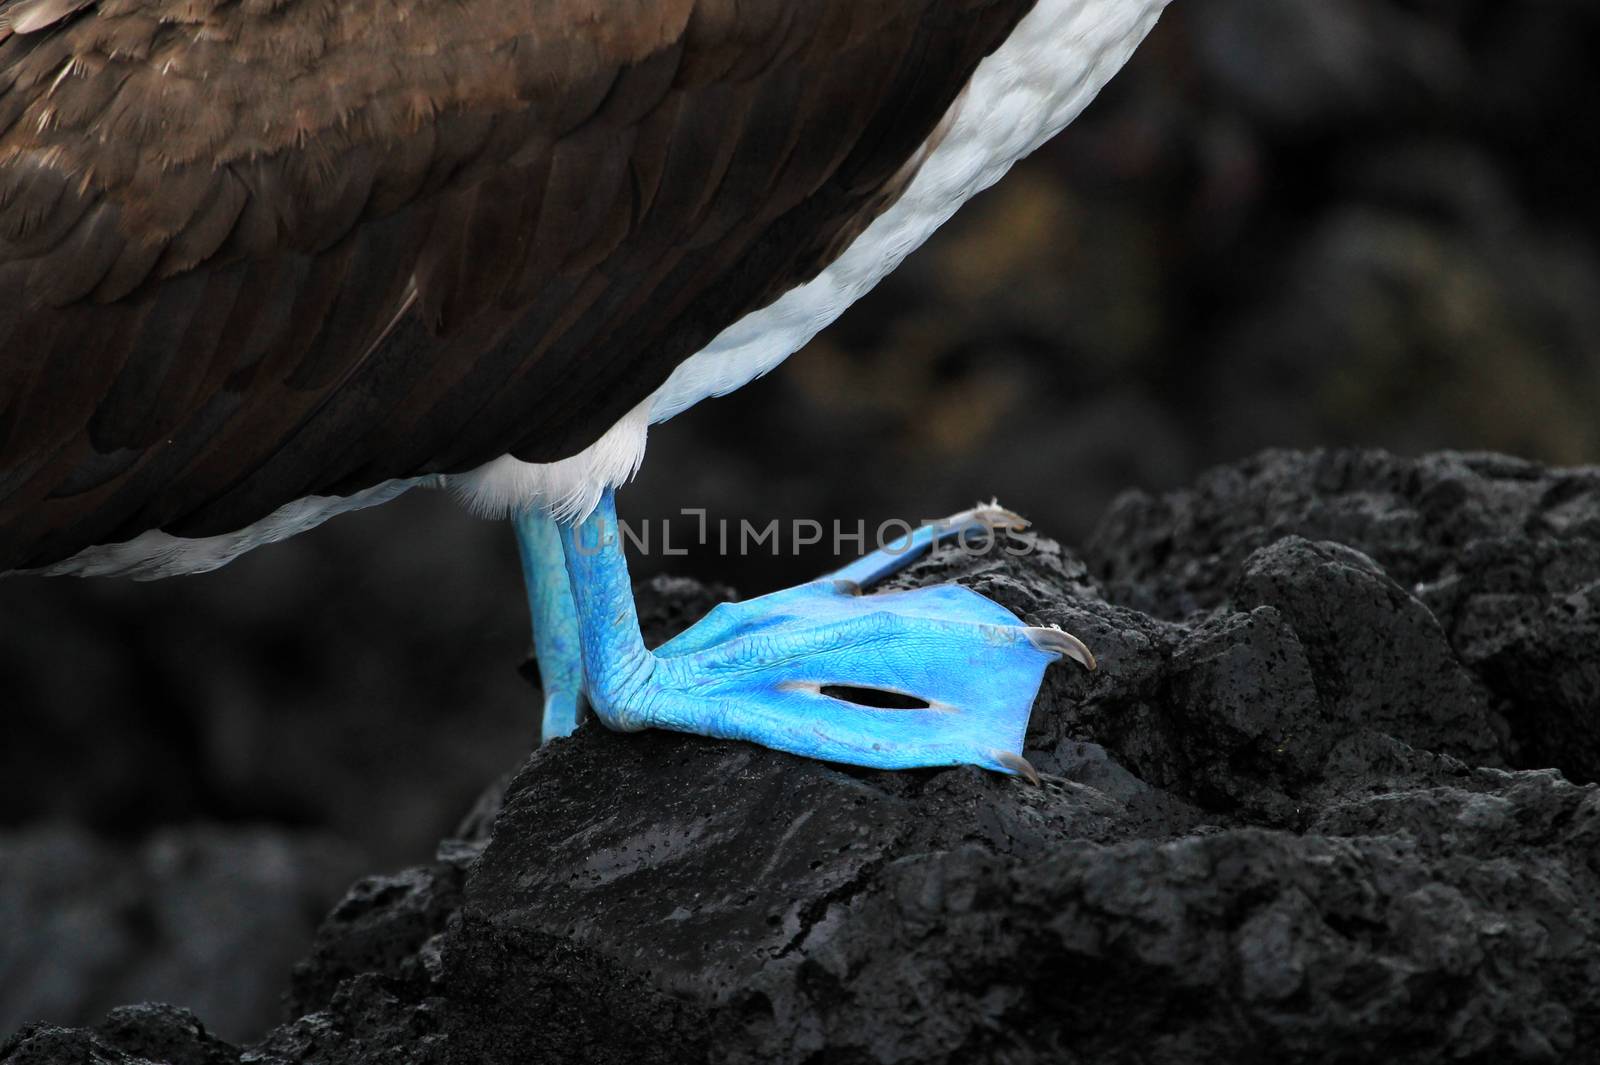 Blue footed booby, sula nebouxii, Galapagos Ecuador